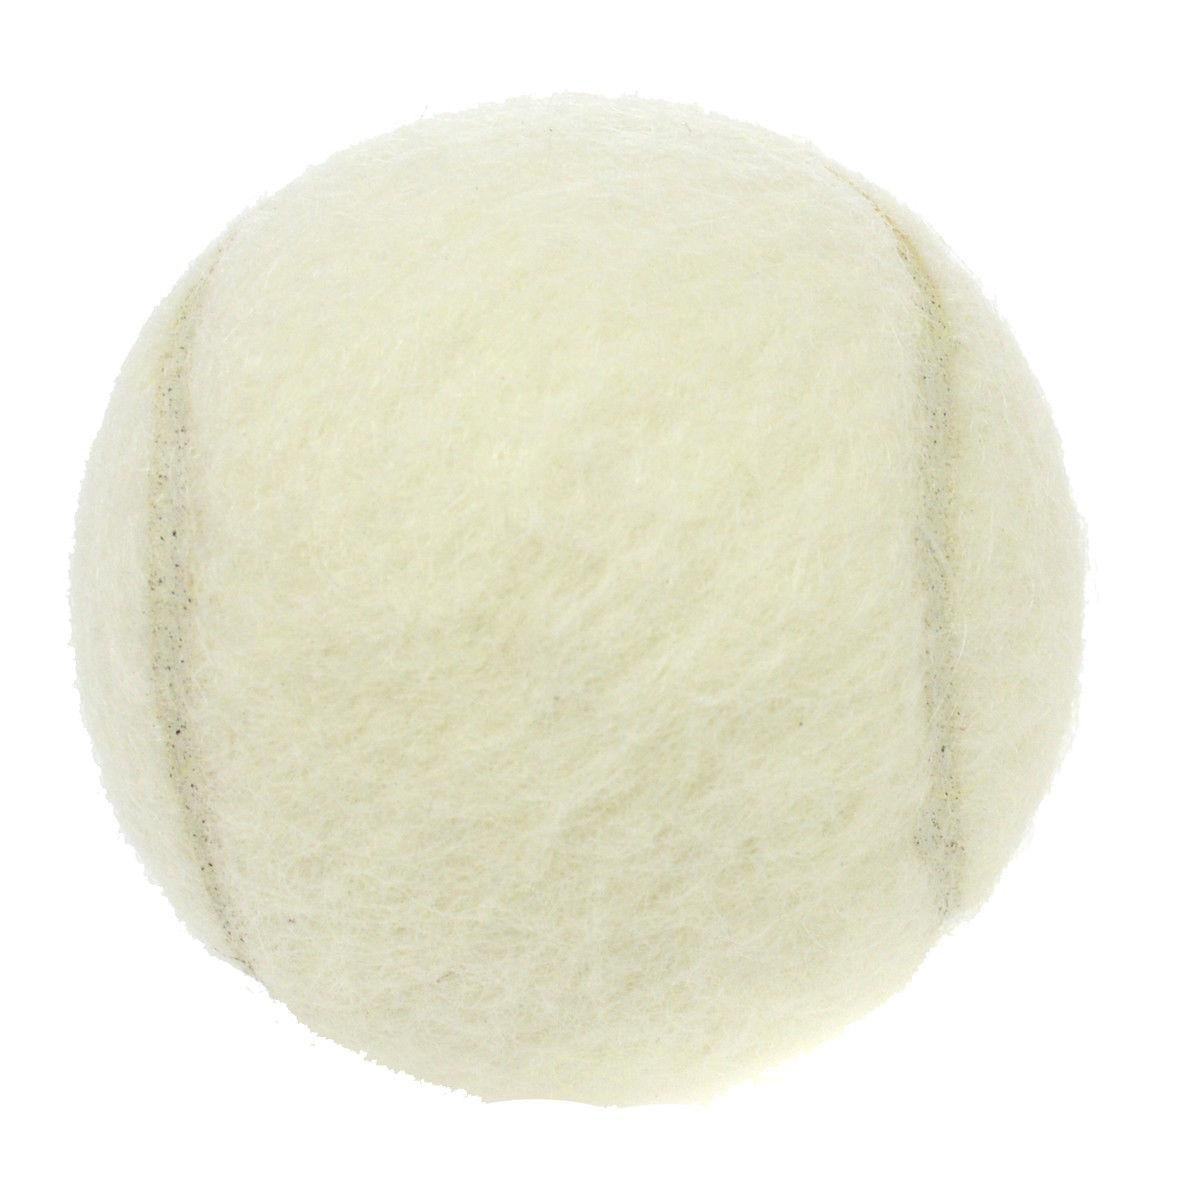 
Wool
Nylon blend
Diameter 2.5